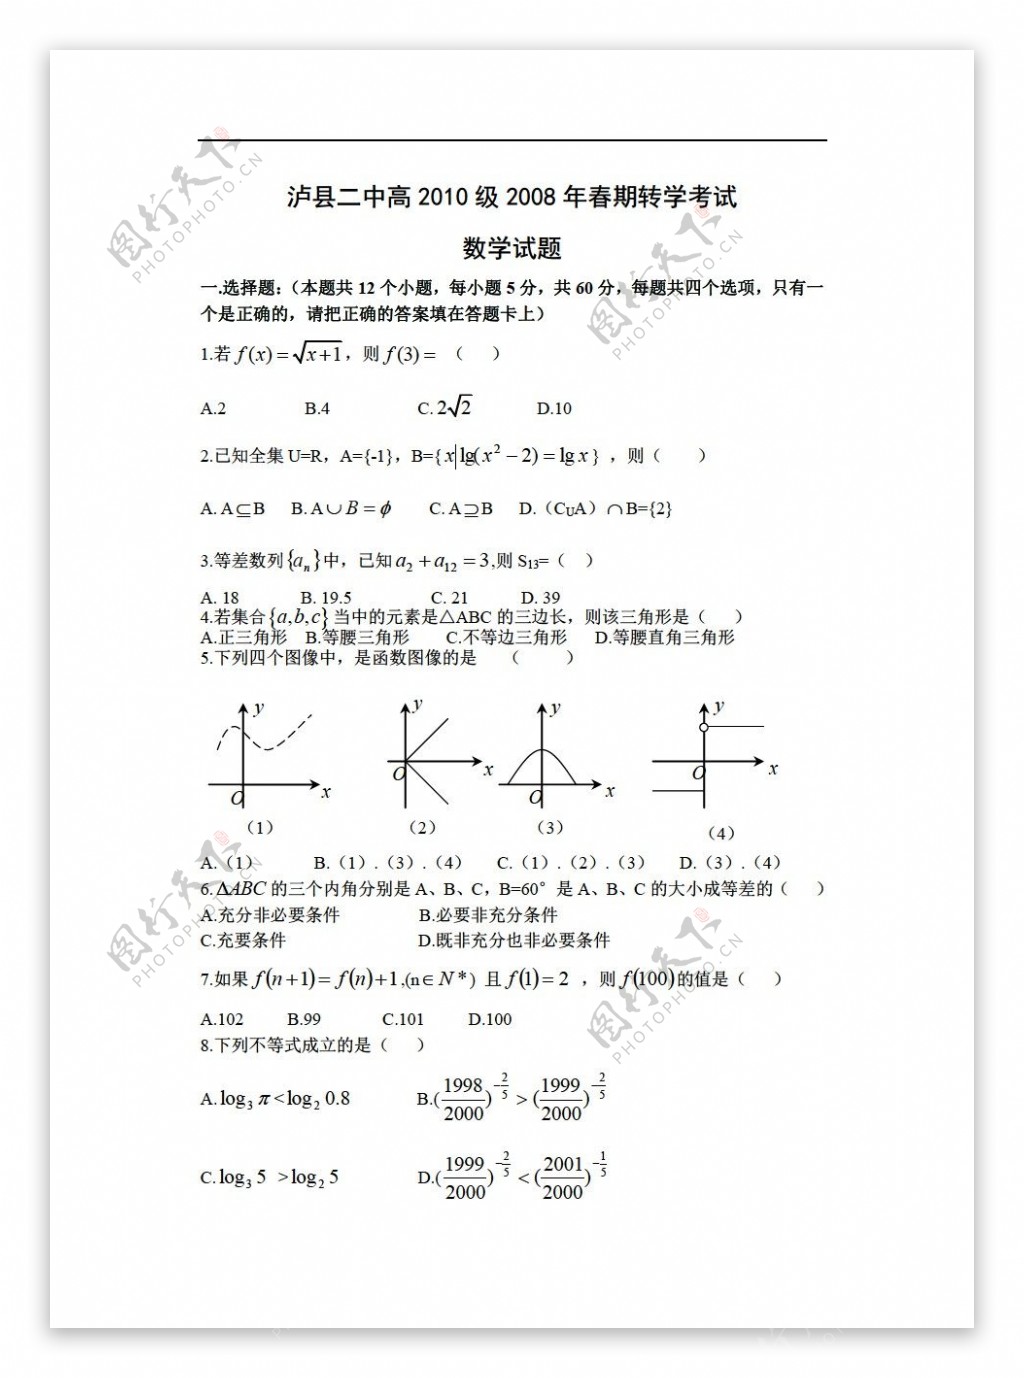 数学人教版泸县二中高2010级春期转学考试试题